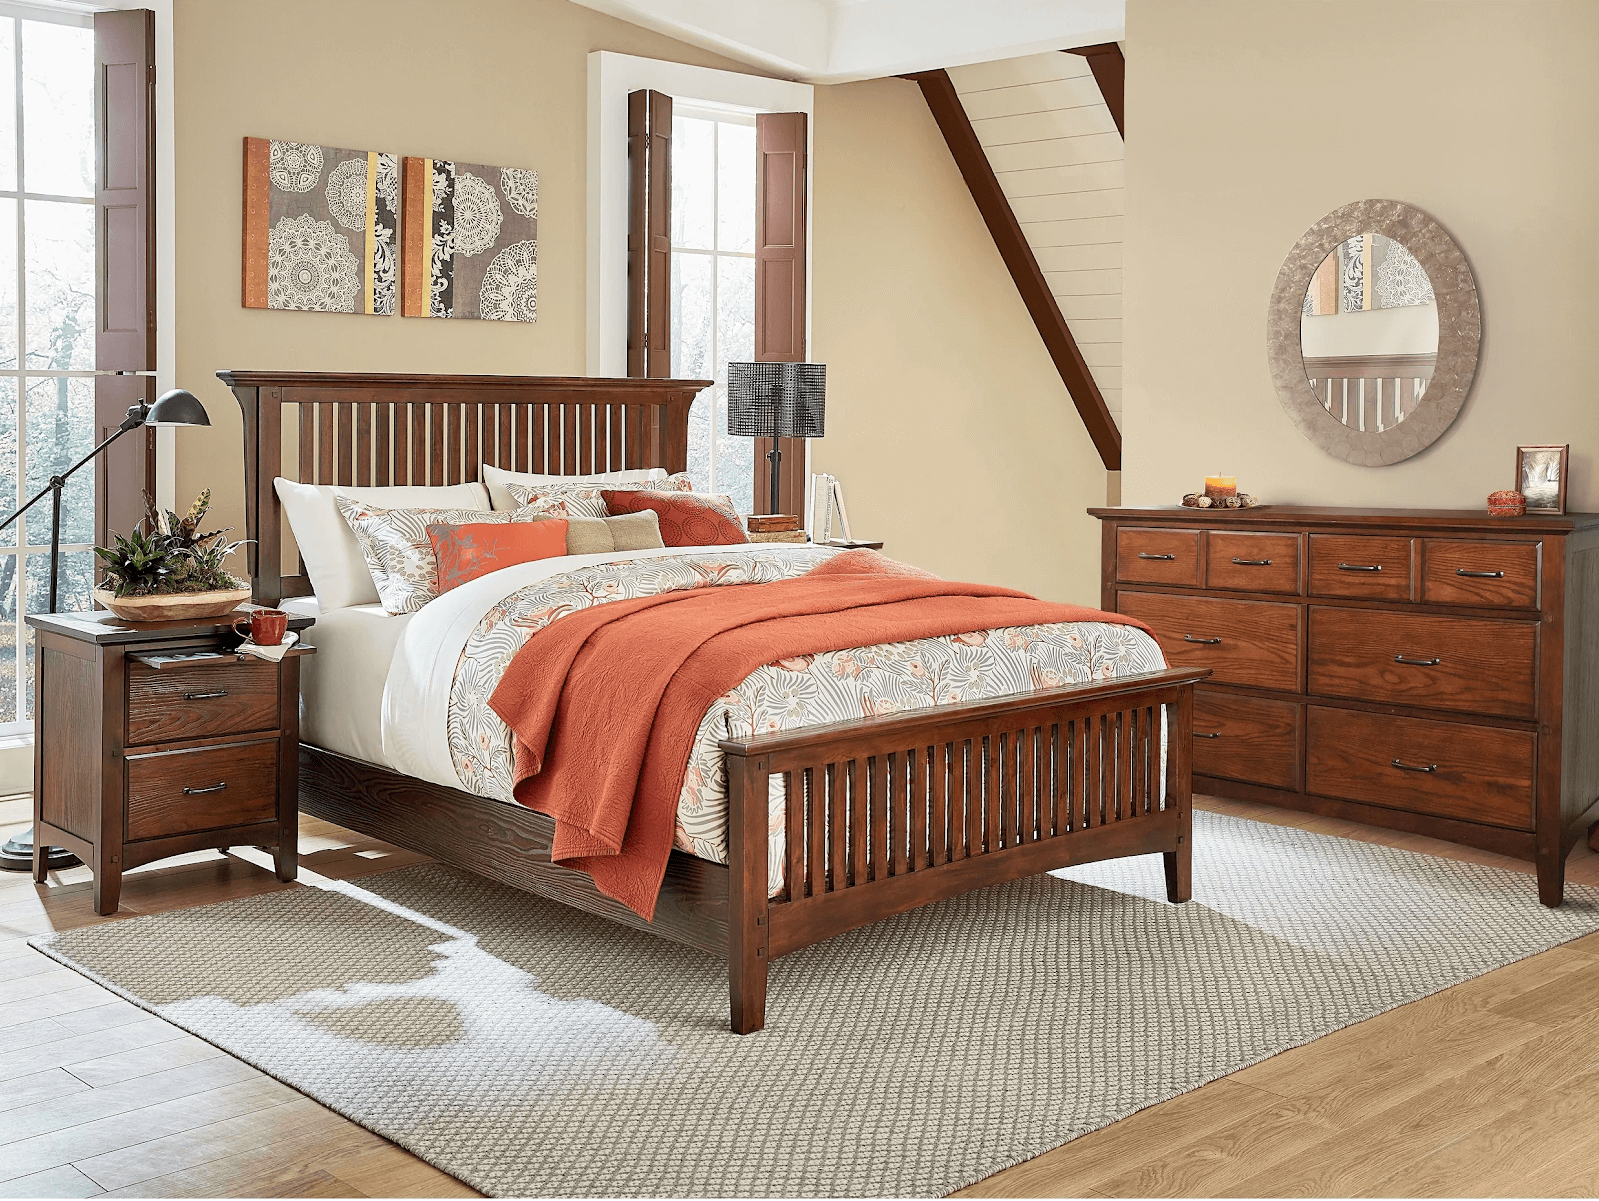 Bộ giường tủ cưới bằng gỗ cổ điển nhưng vẫn hiện đại tinh tế